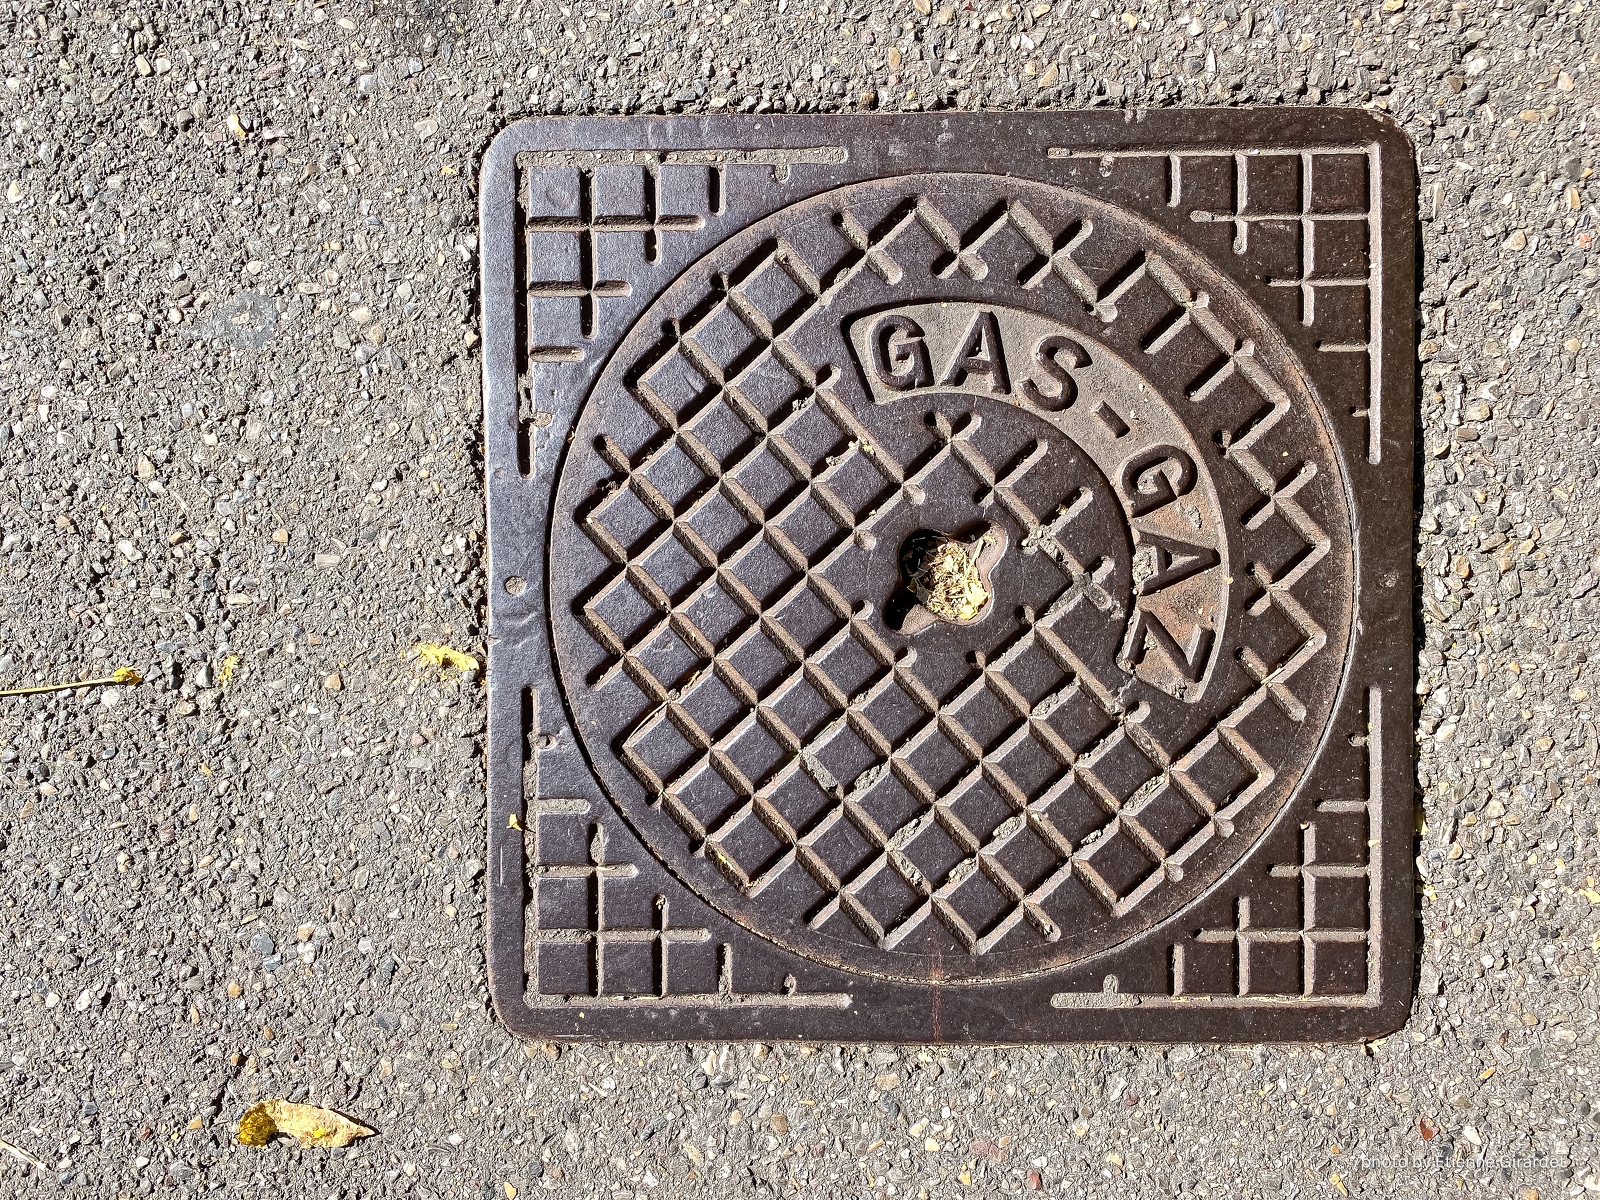 201910_14_IMG_0761-manhole-cover--by-E-Girardet.jpg